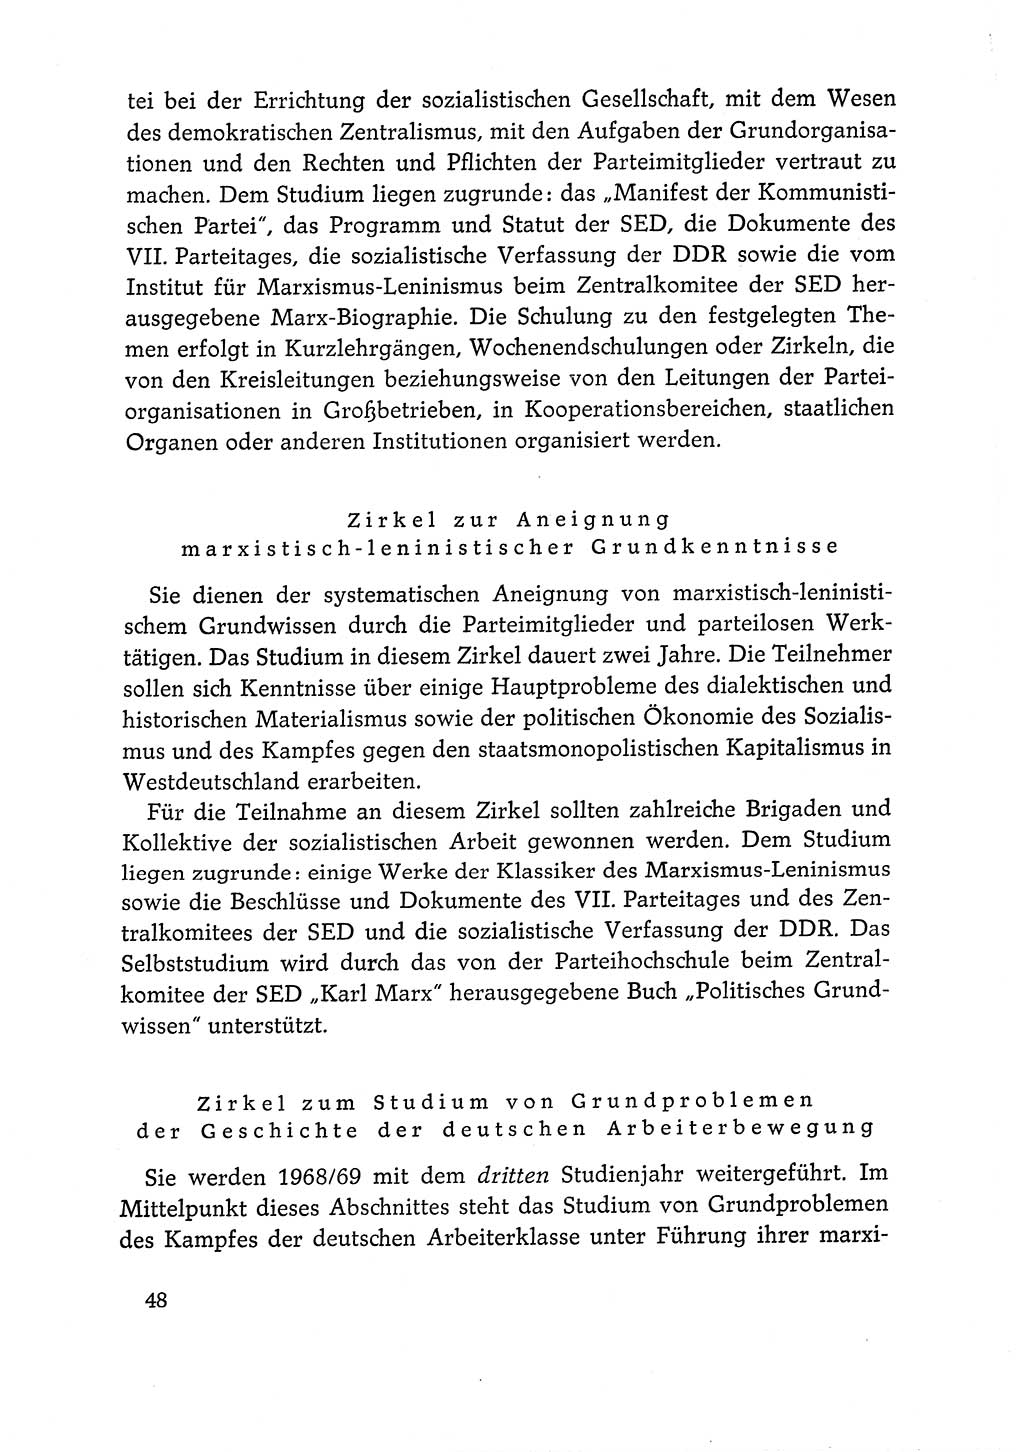 Dokumente der Sozialistischen Einheitspartei Deutschlands (SED) [Deutsche Demokratische Republik (DDR)] 1968-1969, Seite 48 (Dok. SED DDR 1968-1969, S. 48)